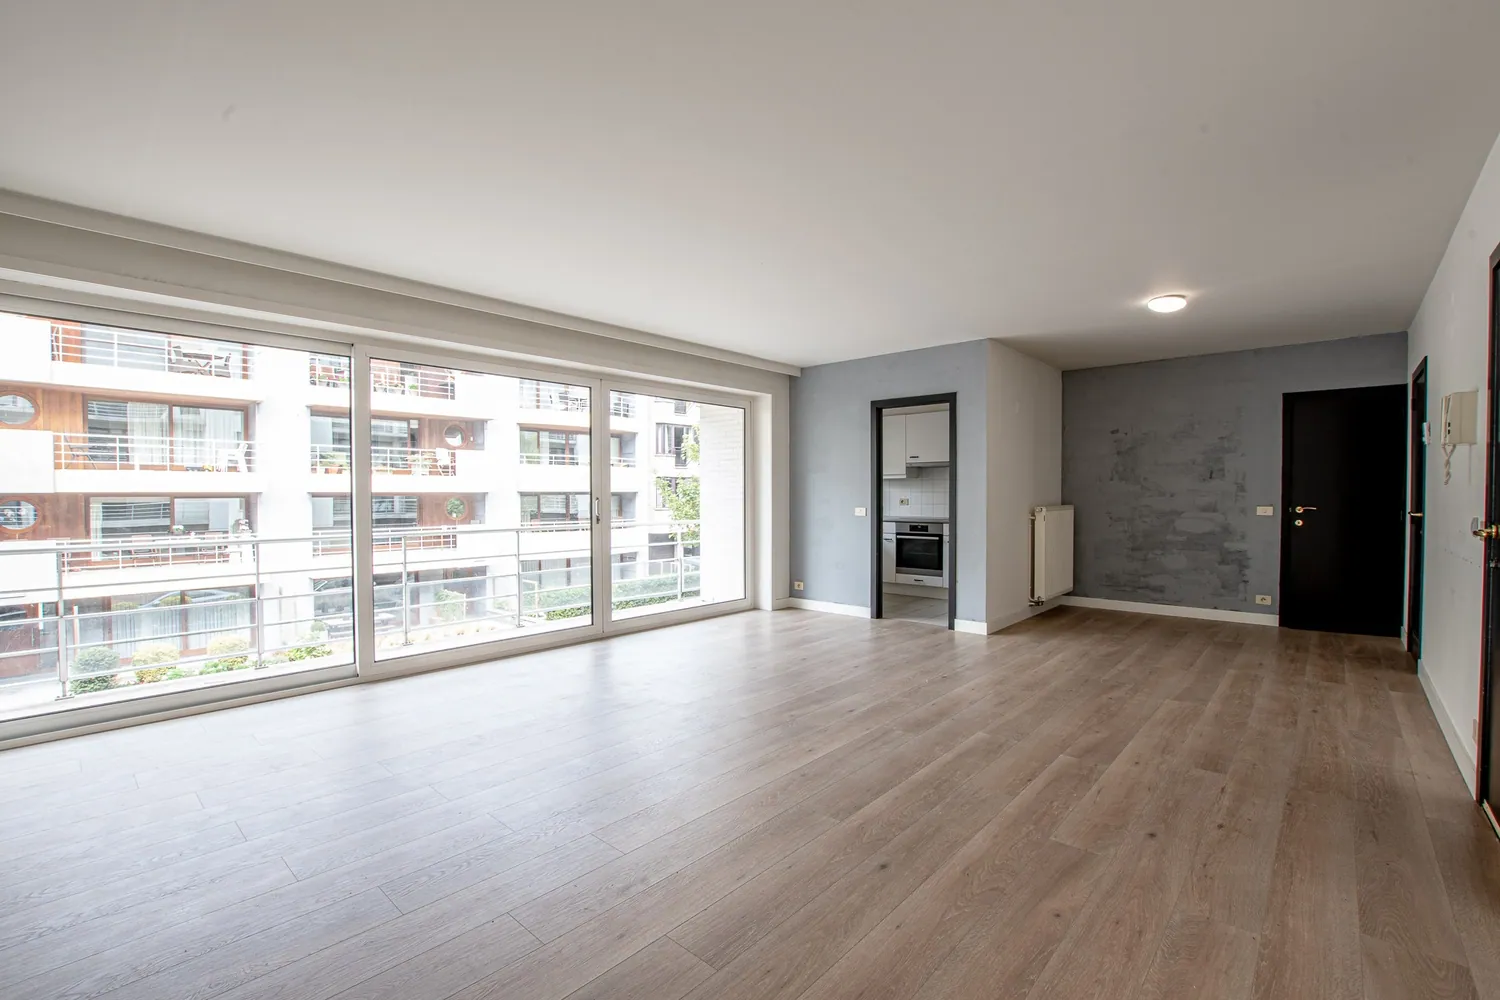 Investissement intéressant: Appartement situé au centre à 50m à pied de la l’avenue Lippens avec terrasse ensoleillée.